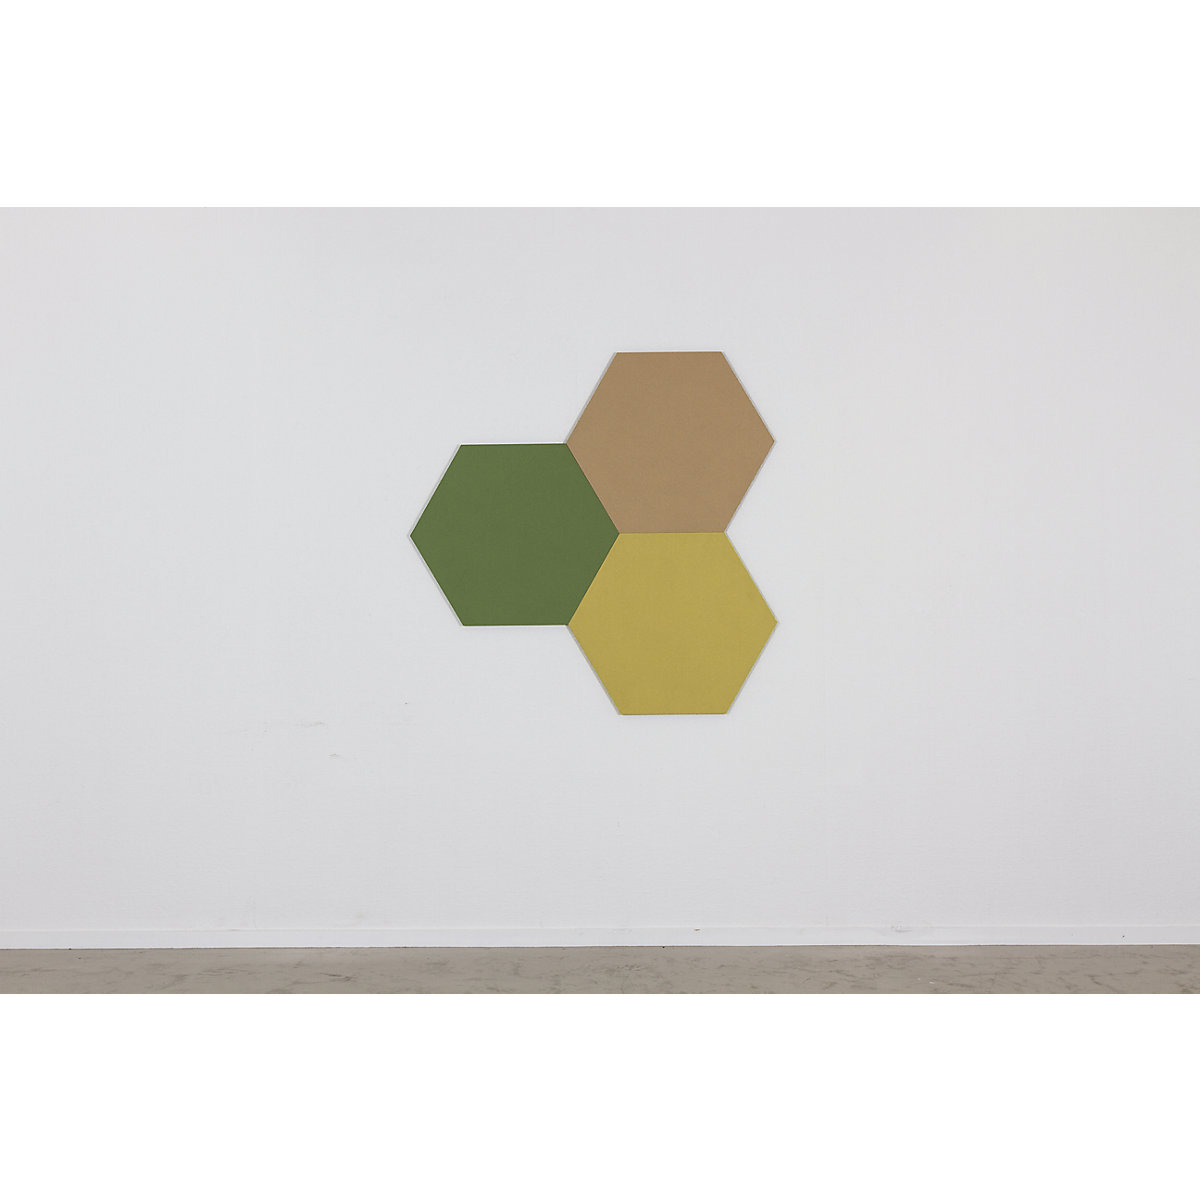 Hexagonal designer pin board – Chameleon (Product illustration 10)-9